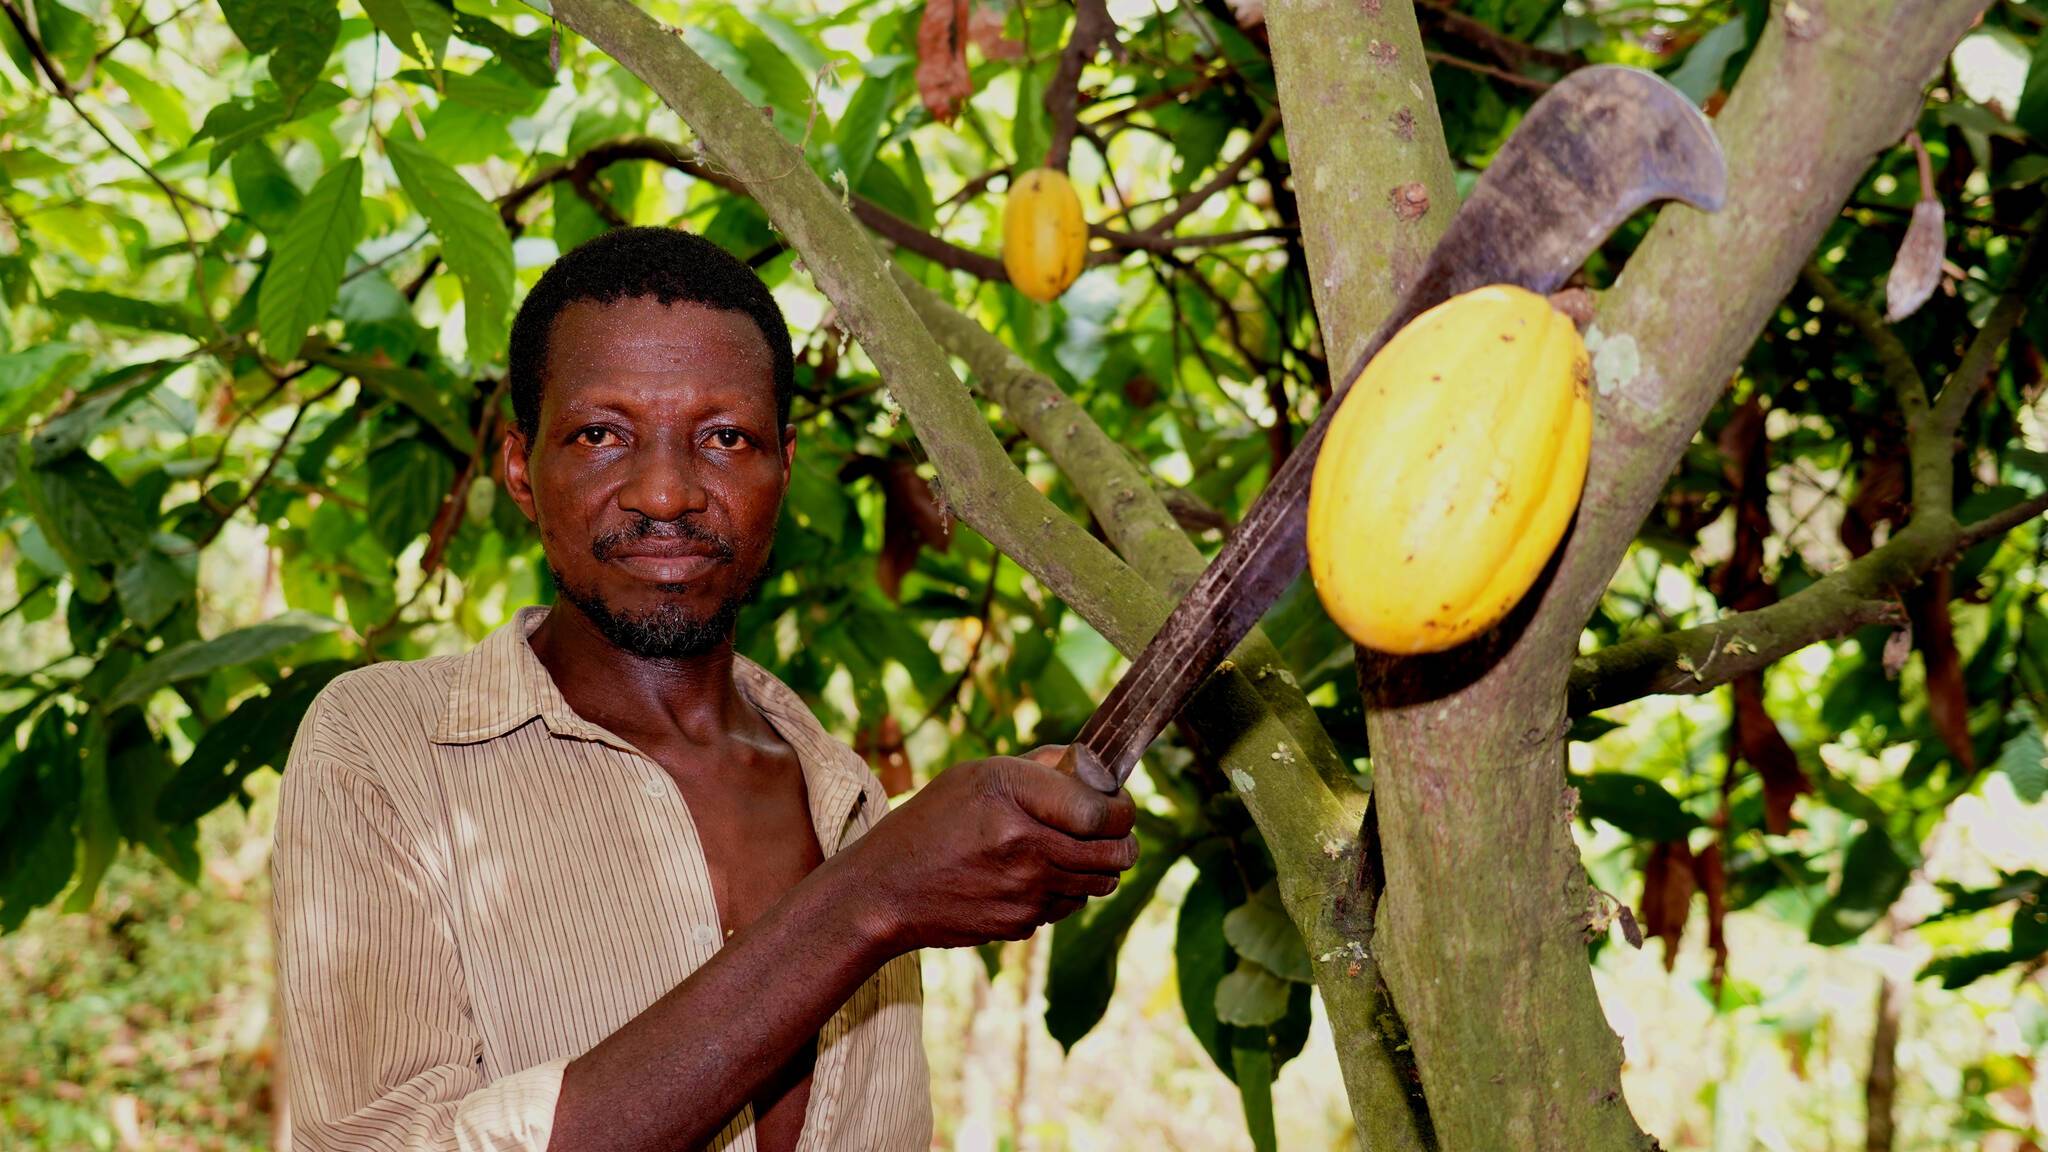  Kakaobauer Agoro M. Daouda von „gebana Togo“: Die GEPA zahlte 2020 ihren Partnergenossenschaften in Lateinamerika und Afrika durchschnittlich etwa 3.600 US-Dollar pro Tonne Bio-Kakao. Sie lag damit 56,5 Prozent über dem durchschnittlichen Weltmarktpreis. 